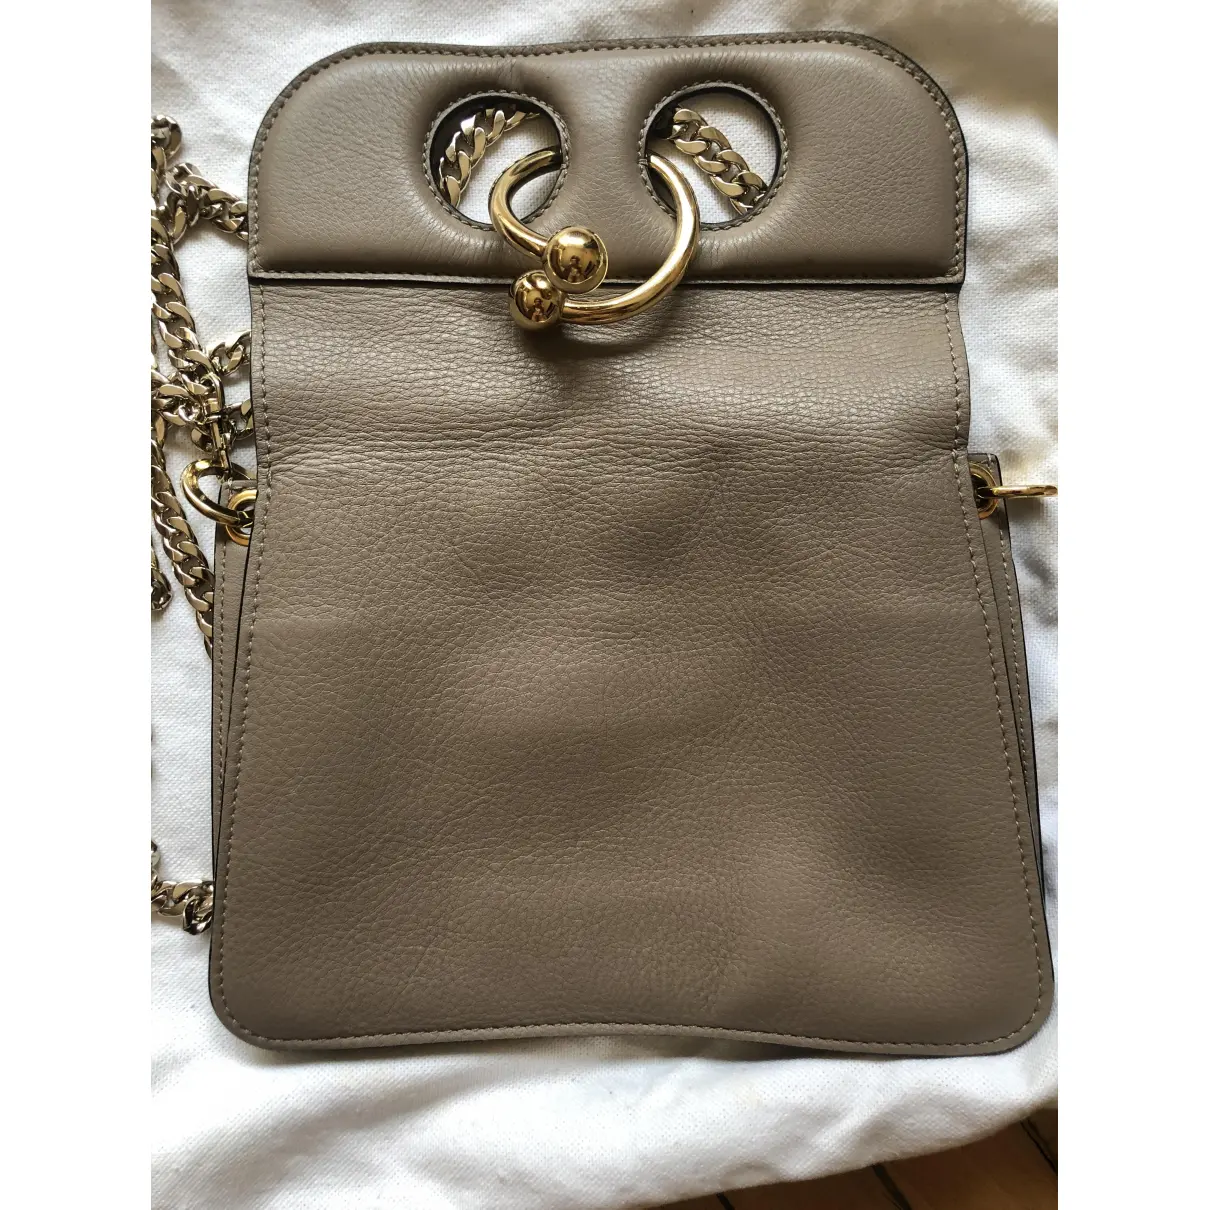 Luxury JW Anderson Handbags Women